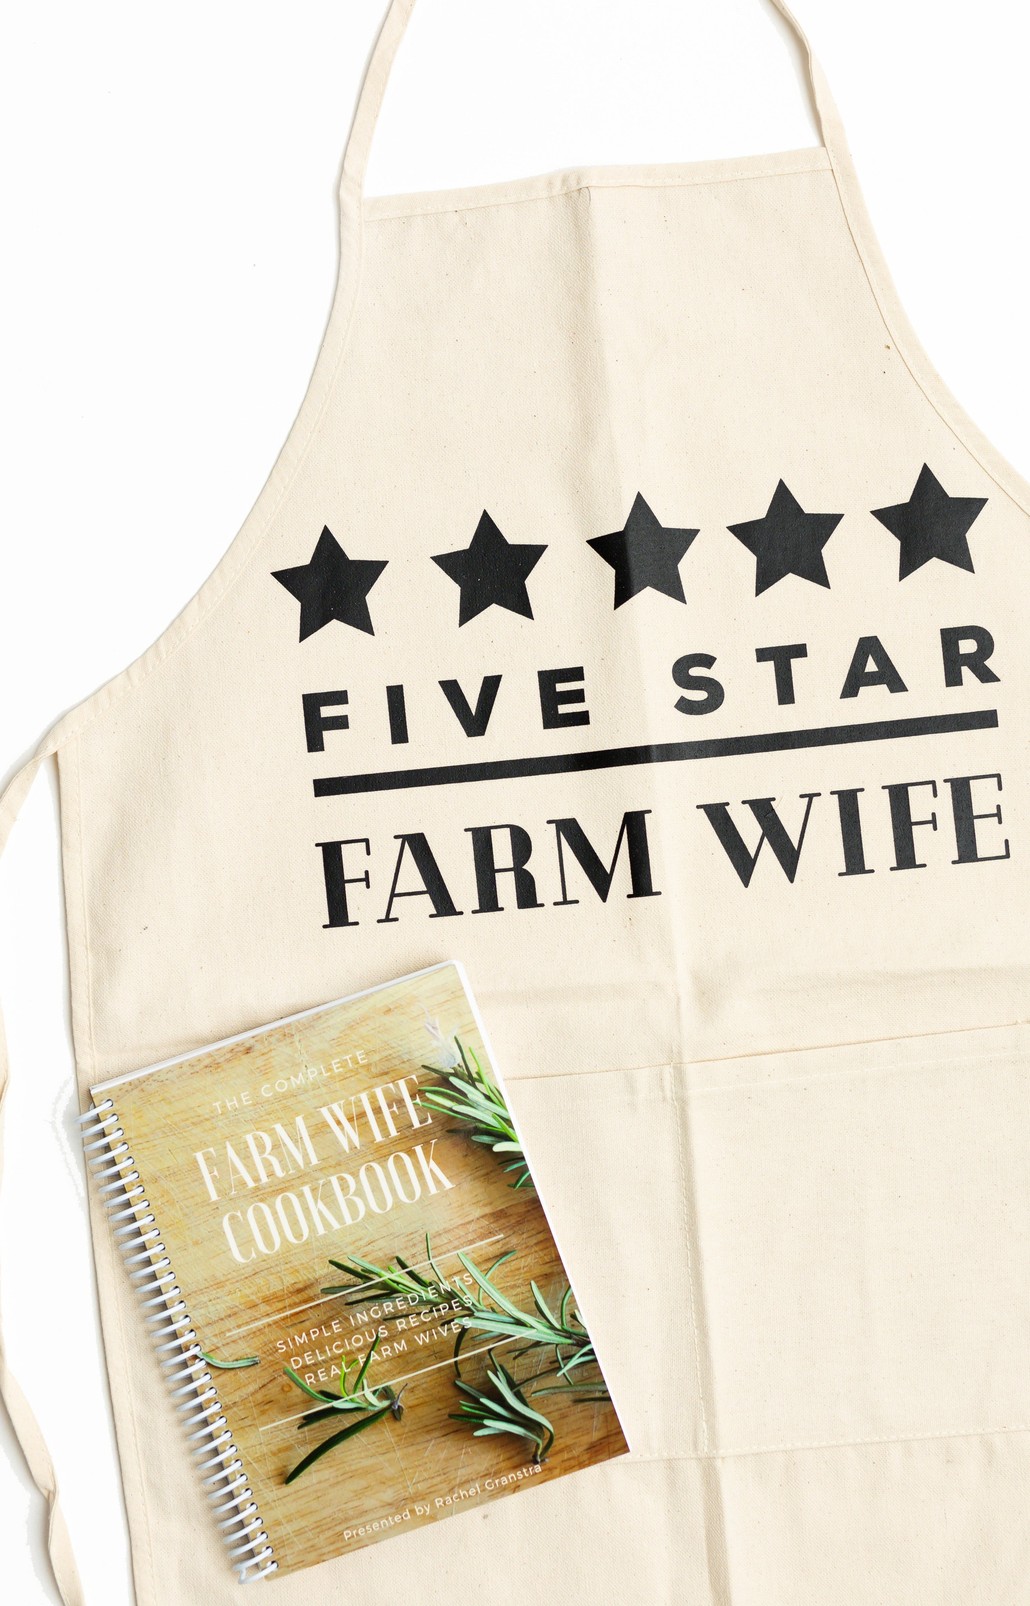 Complete Farm Wife CookBook Bundle